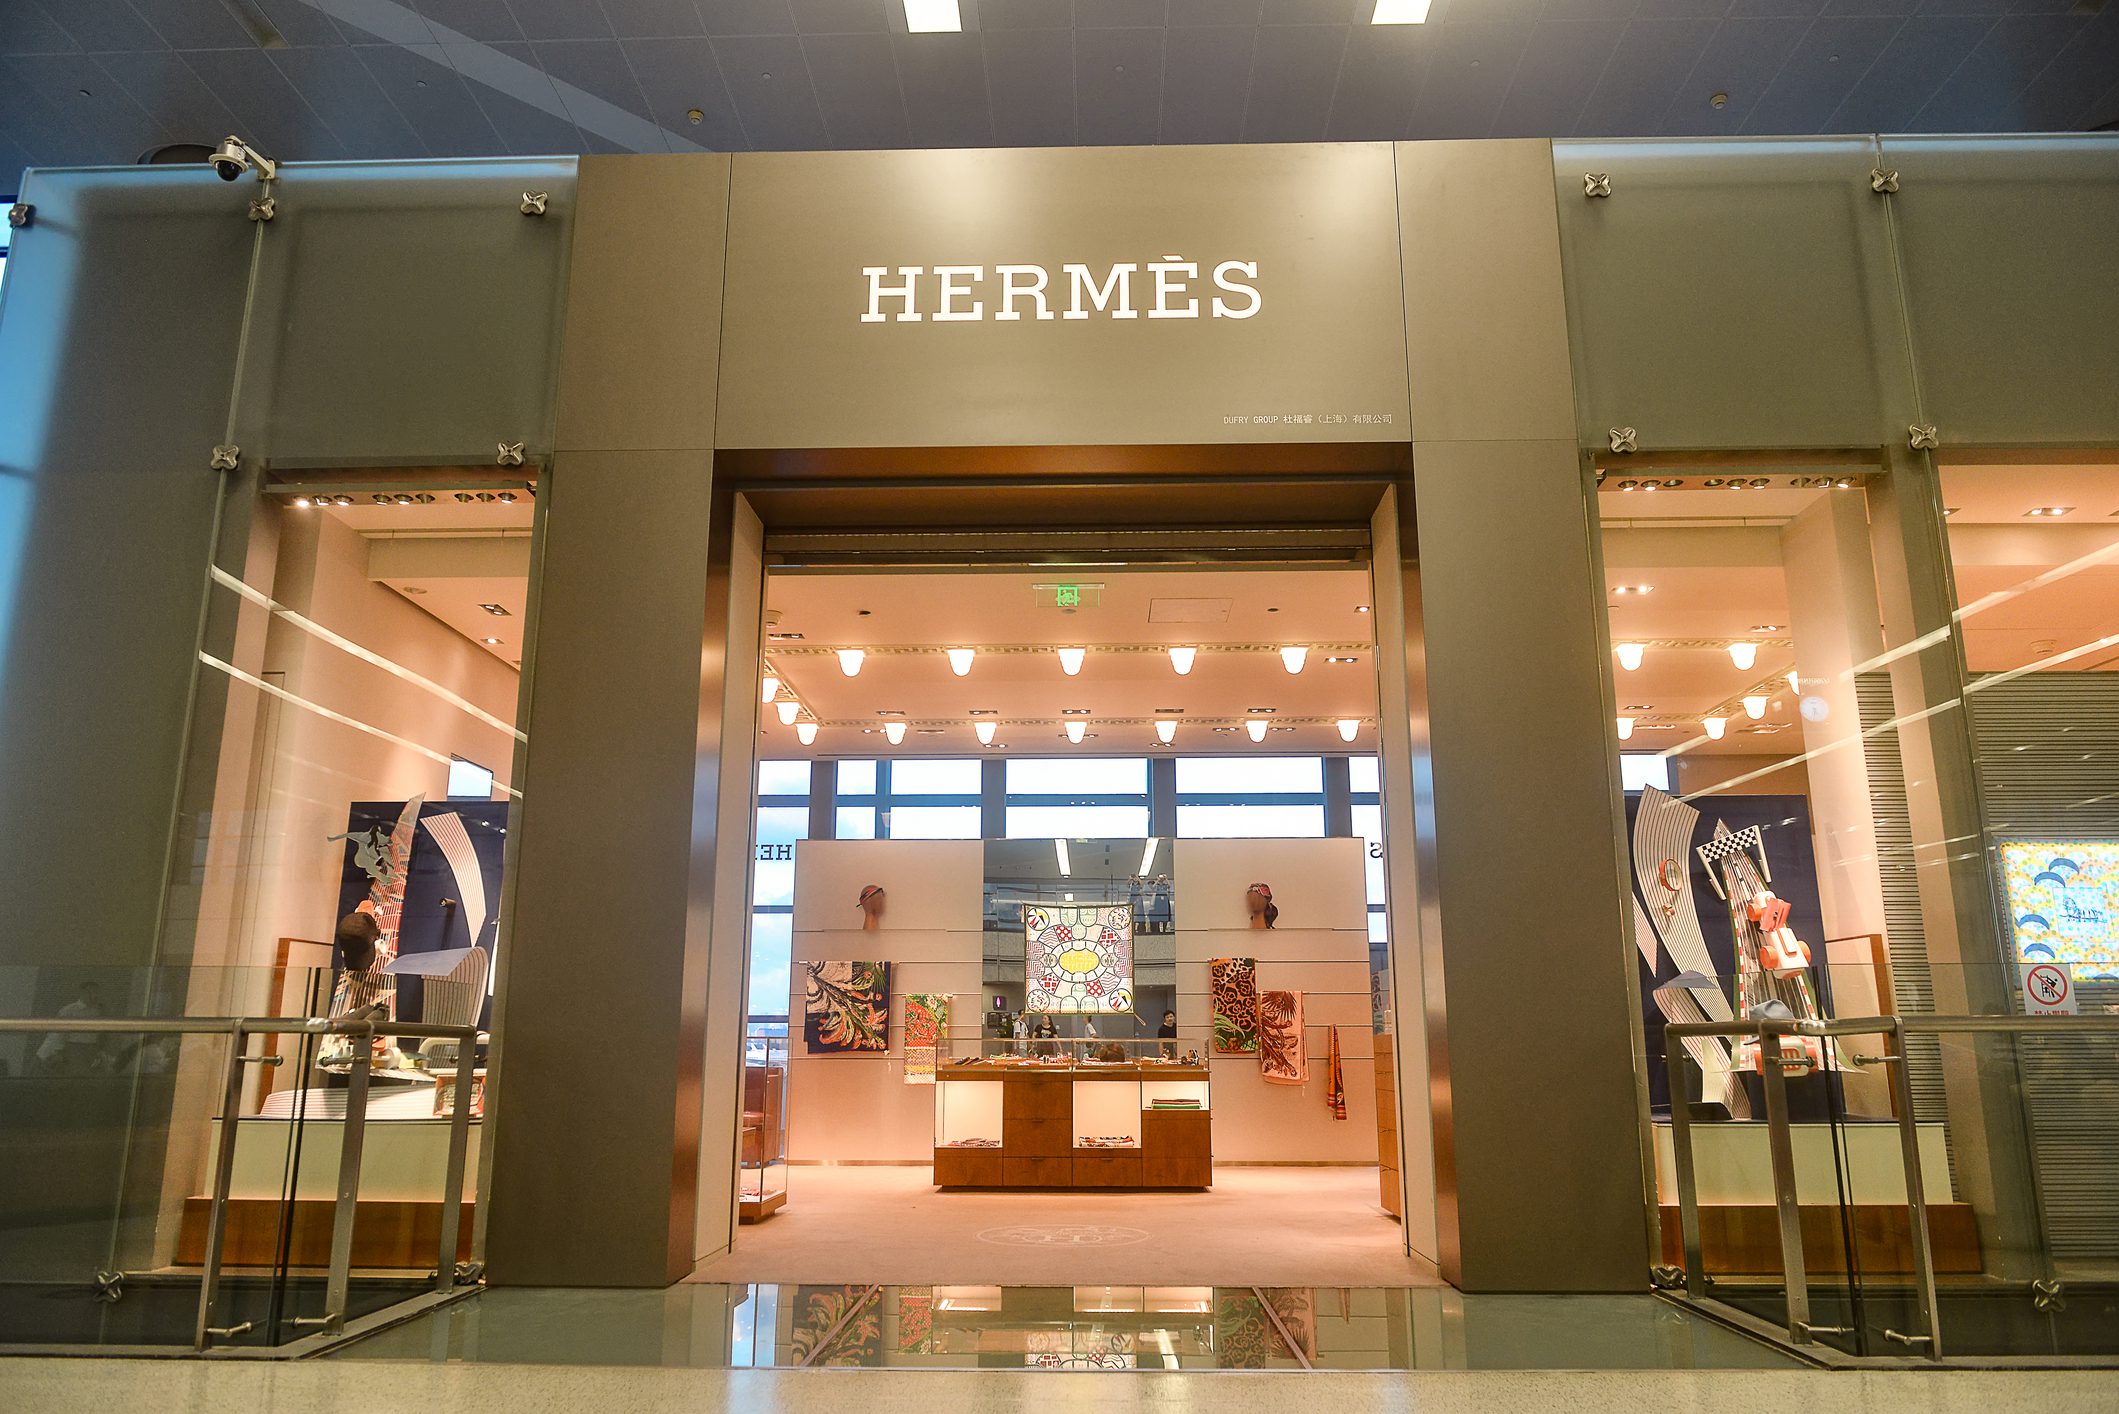 Sample Sale Alert: Score Hermes For Much Less